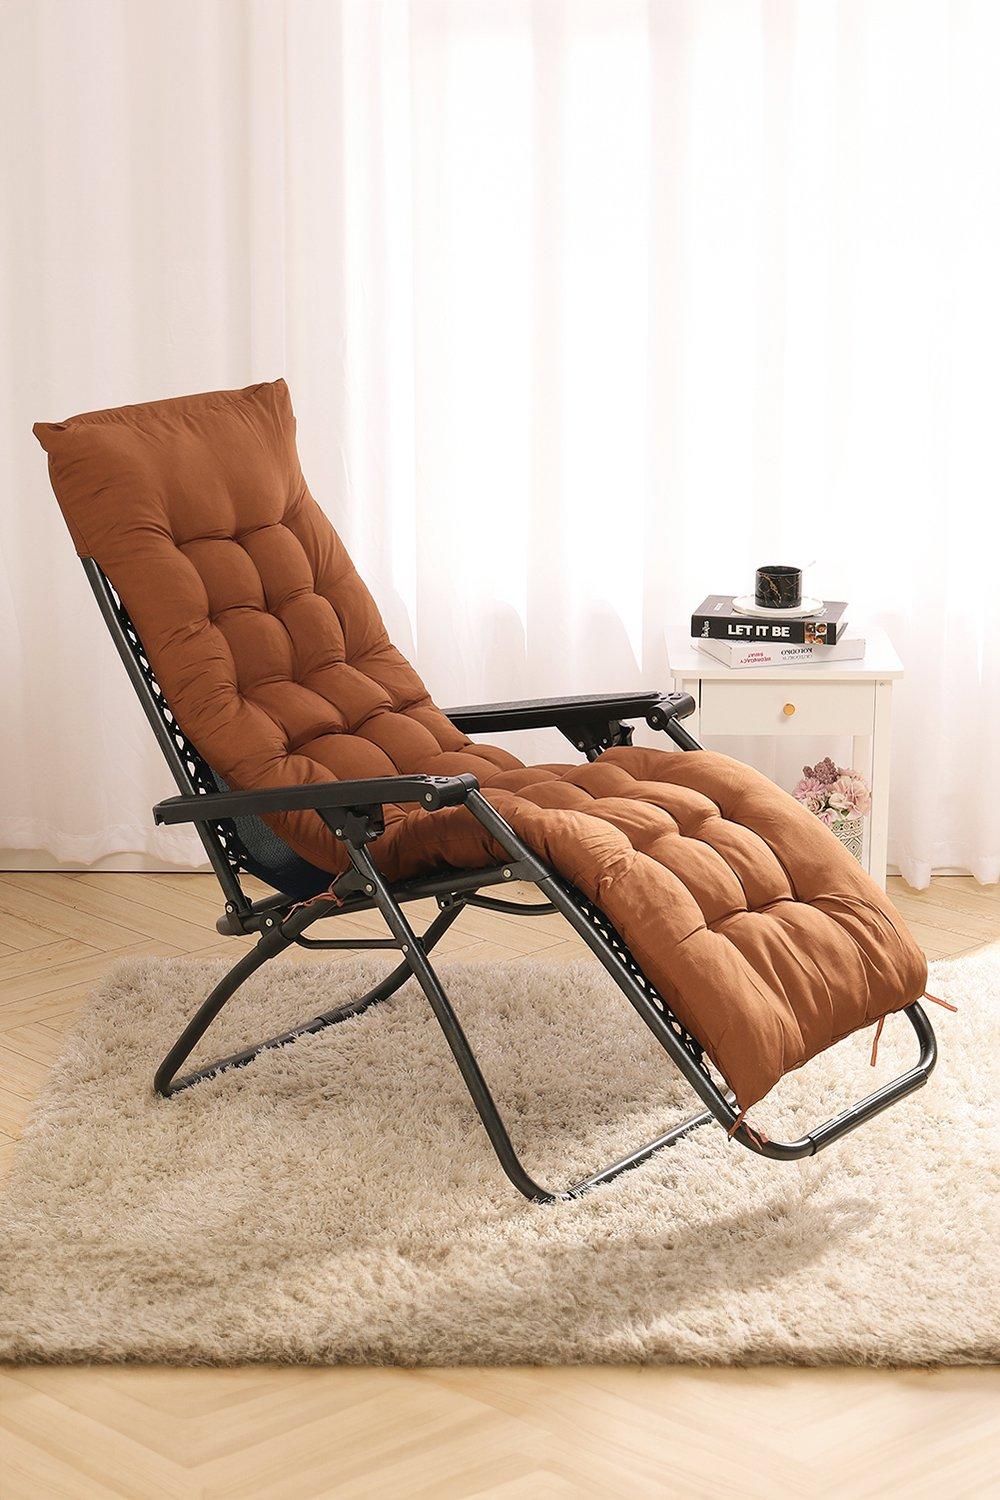 160*50cm Chic Recliner Garden Seat Cushion